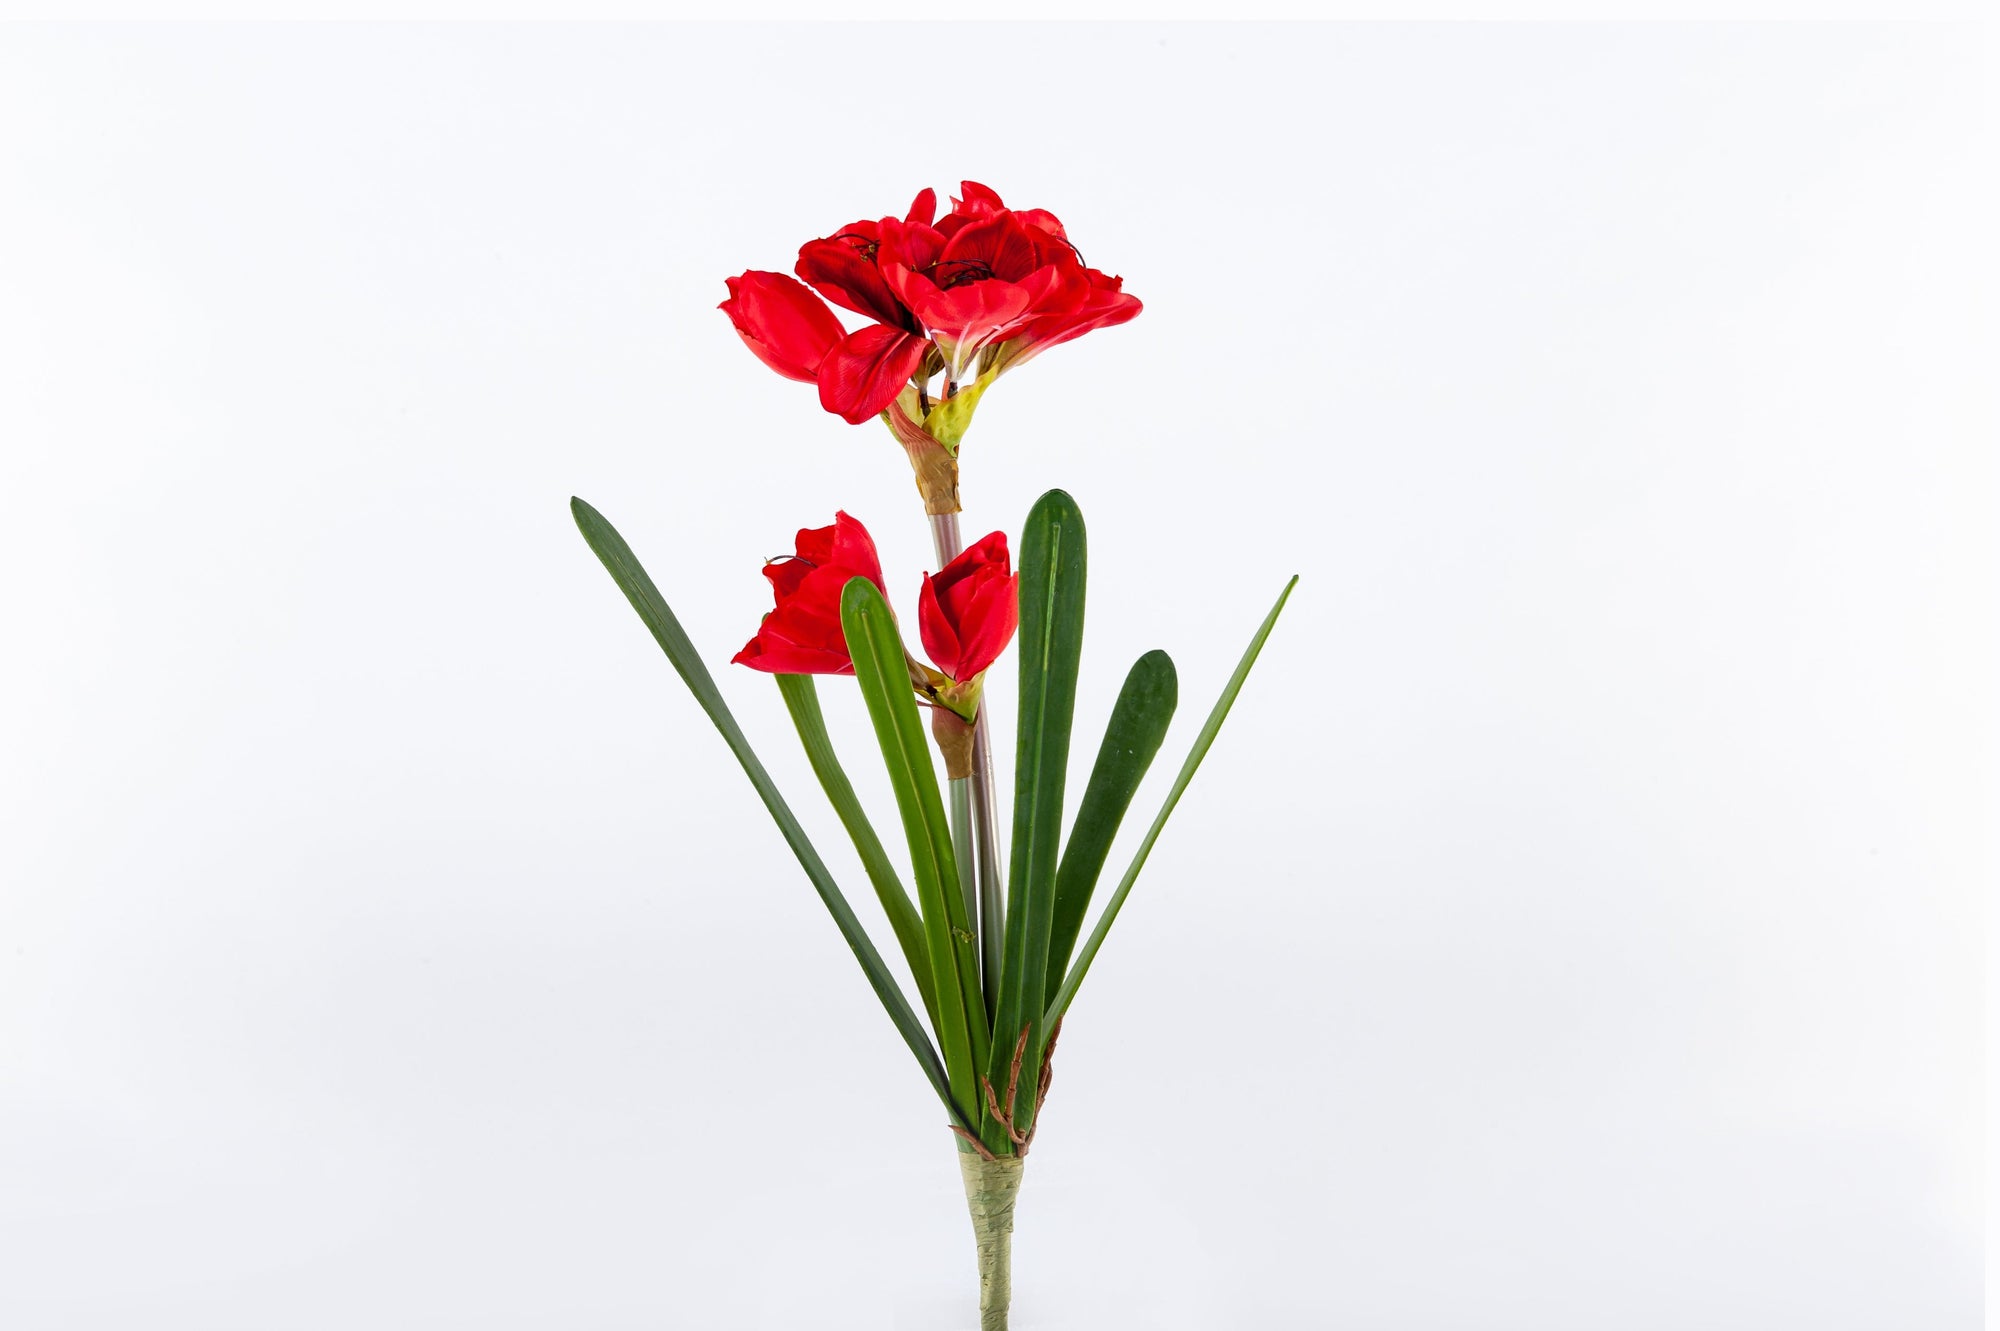 Amaryllis Flower Red - Fervor + Hue